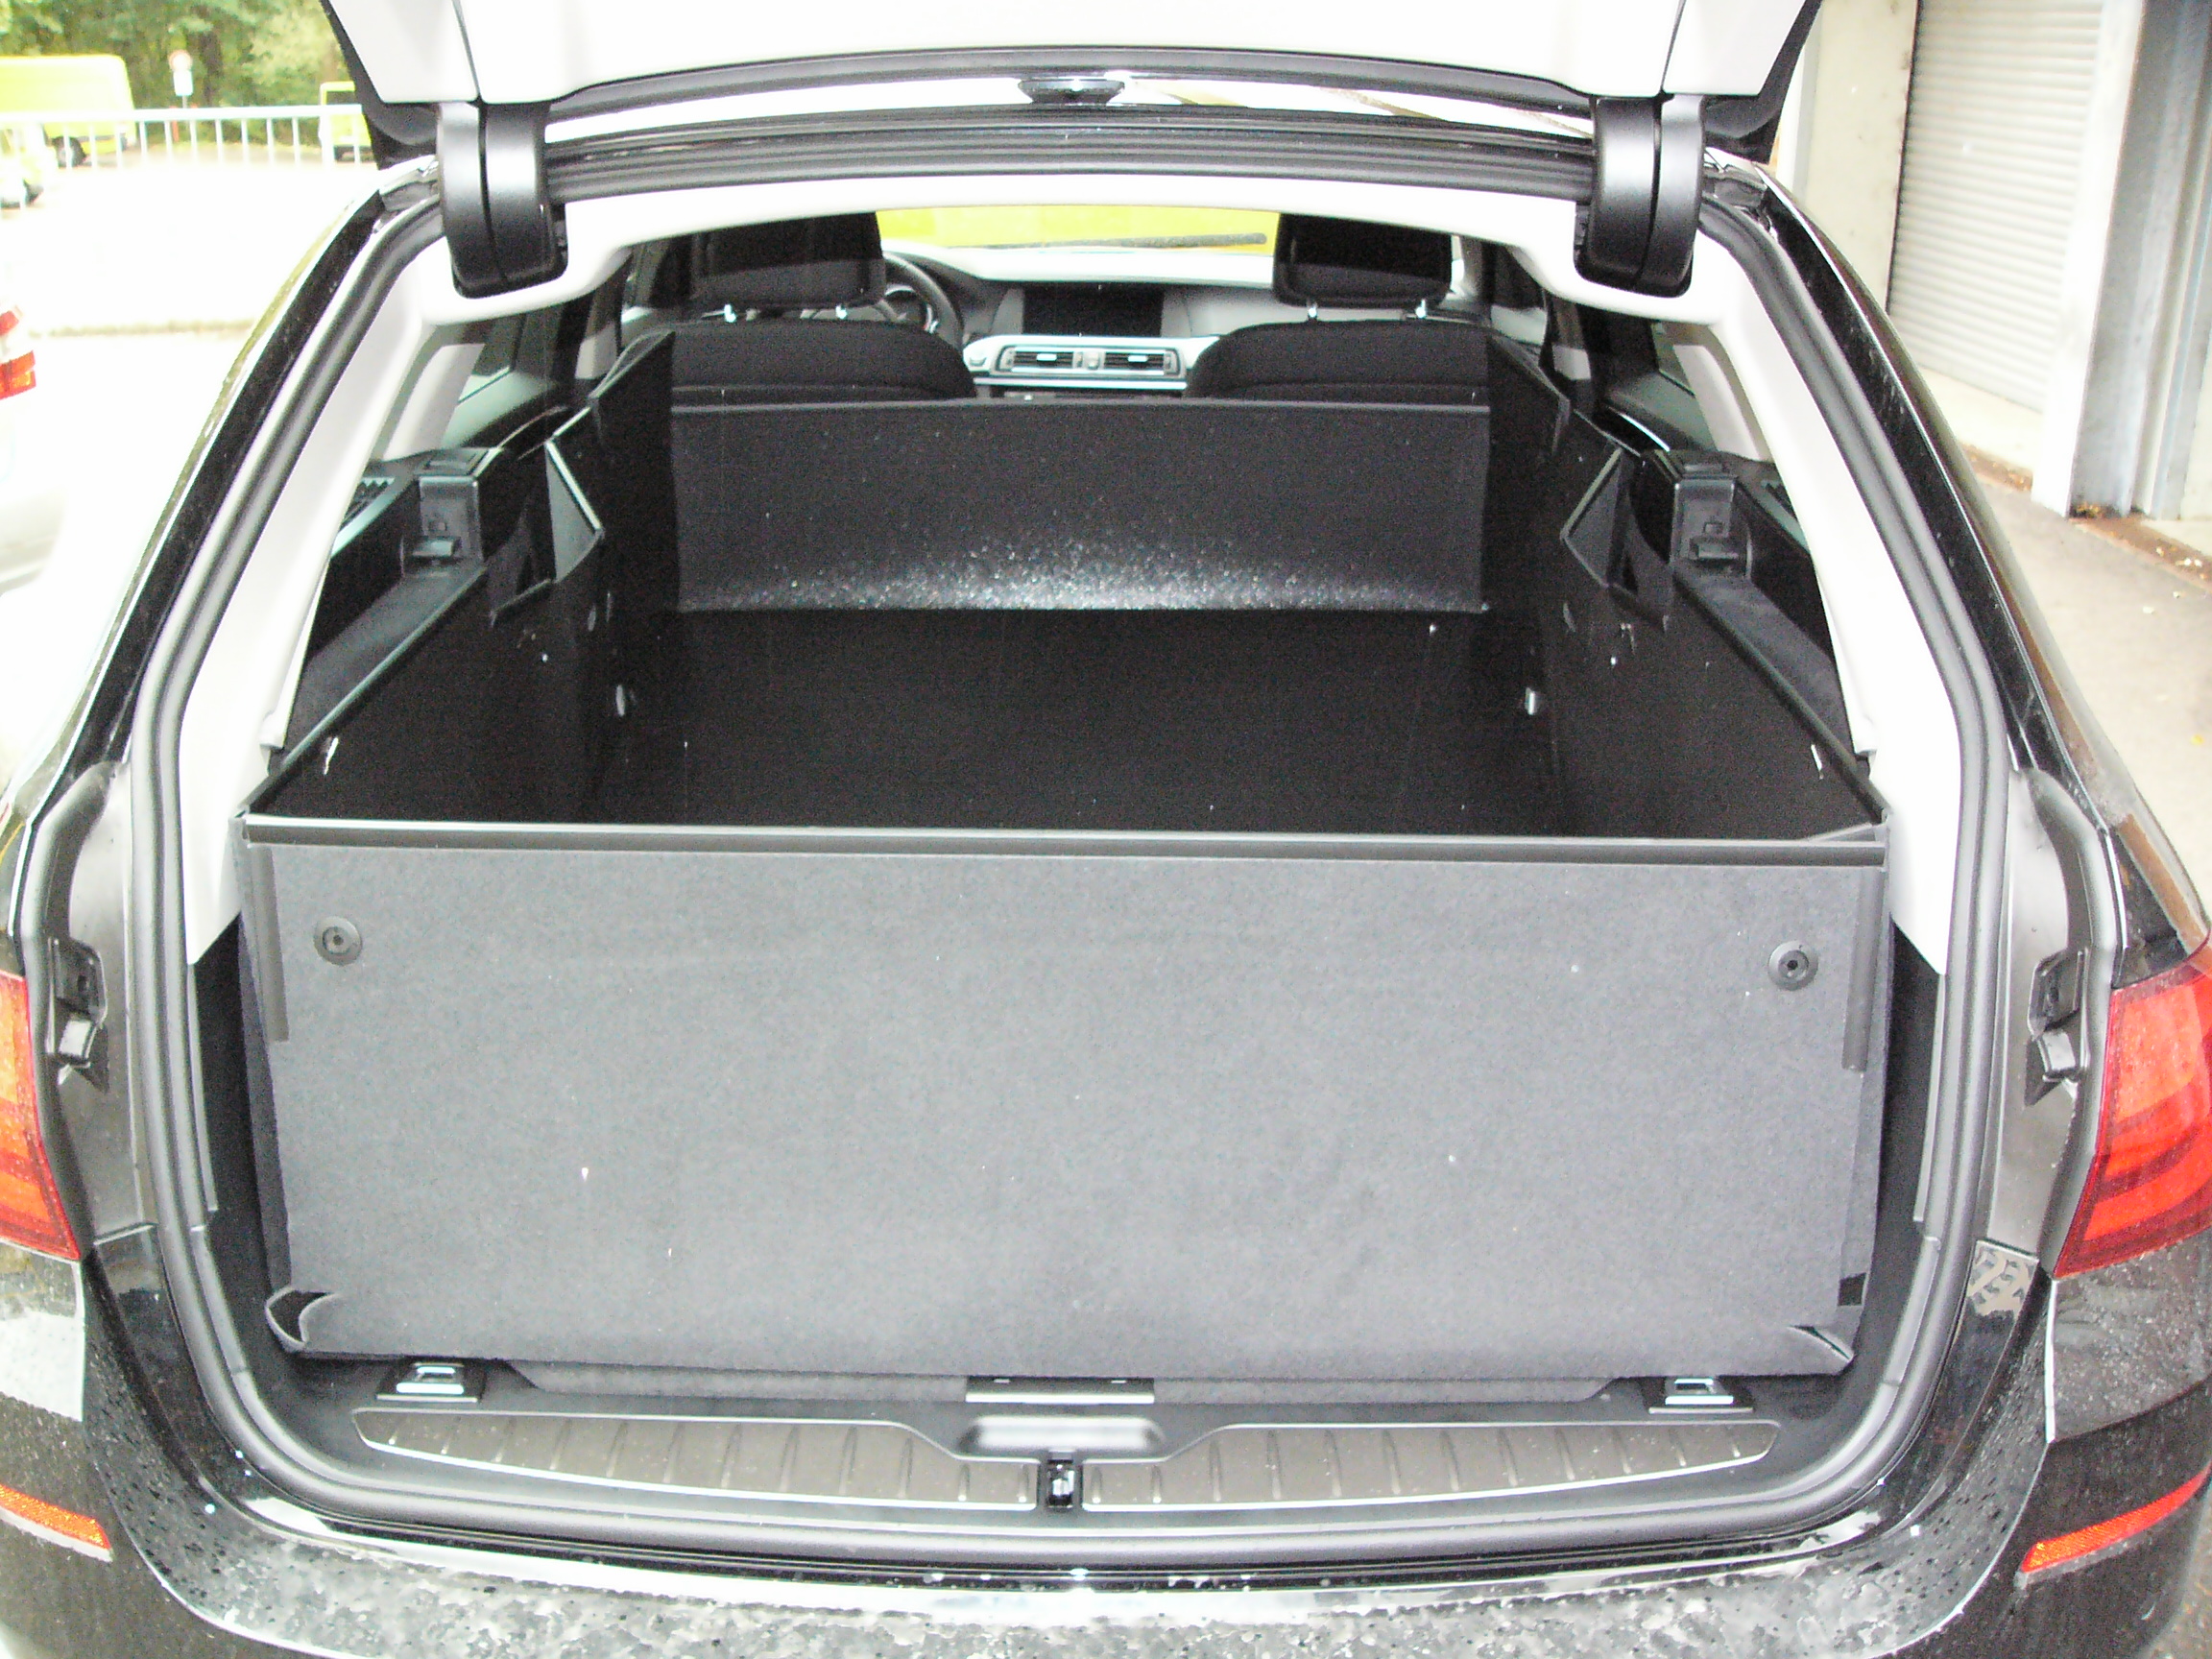 Kofferraumwanne für VW Golf 7 Variant - Auto Ausstattung Shop